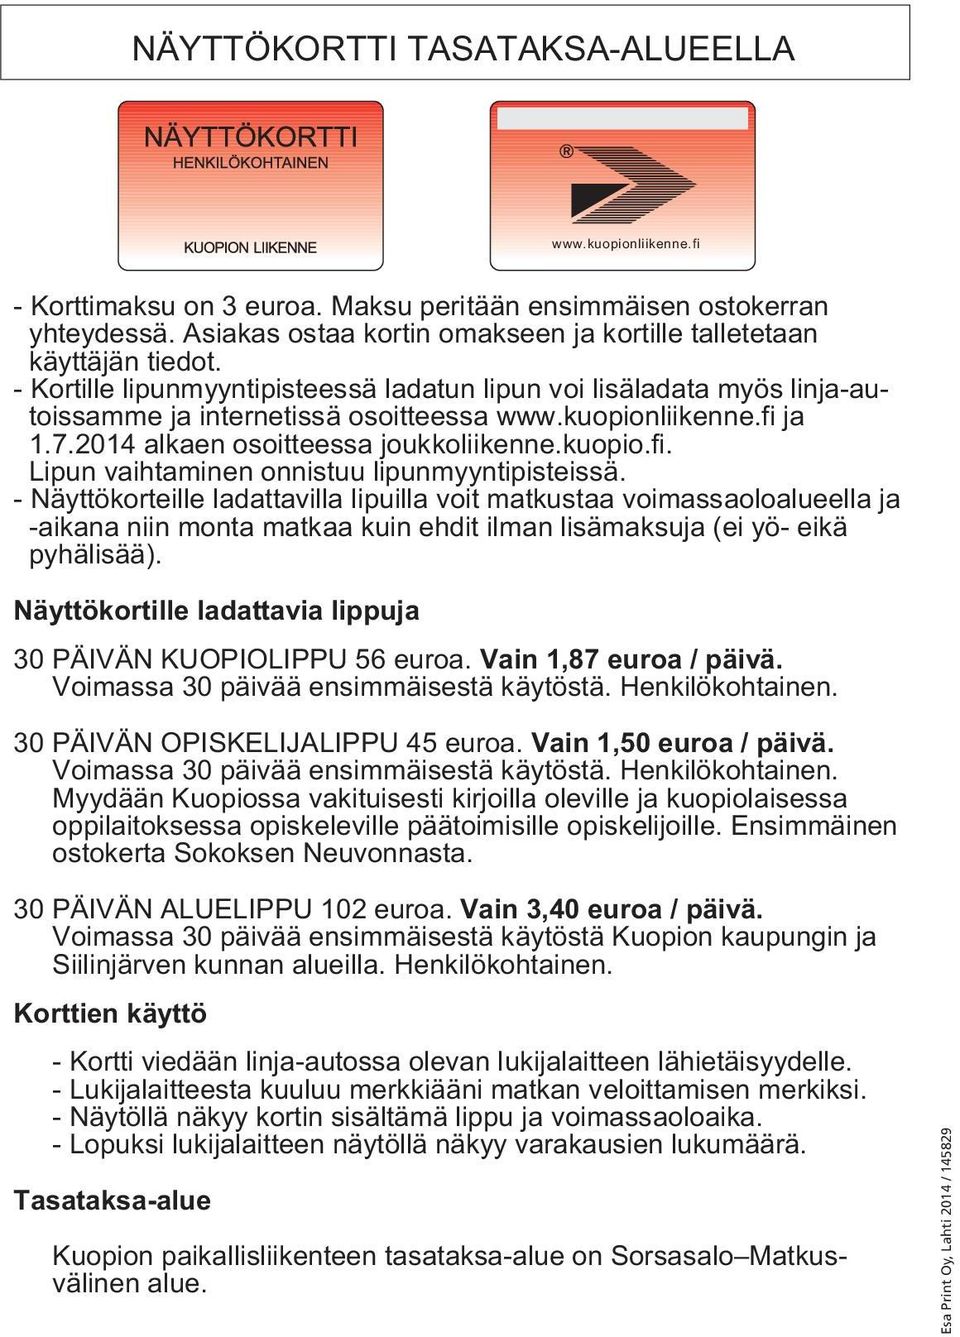 kuopionliikenne.fi ja 1.7.2014 alkaen osoitteessa joukkoliikenne.kuopio.fi. Lipun vaihtaminen onnistuu lipunmyyntipisteissä.